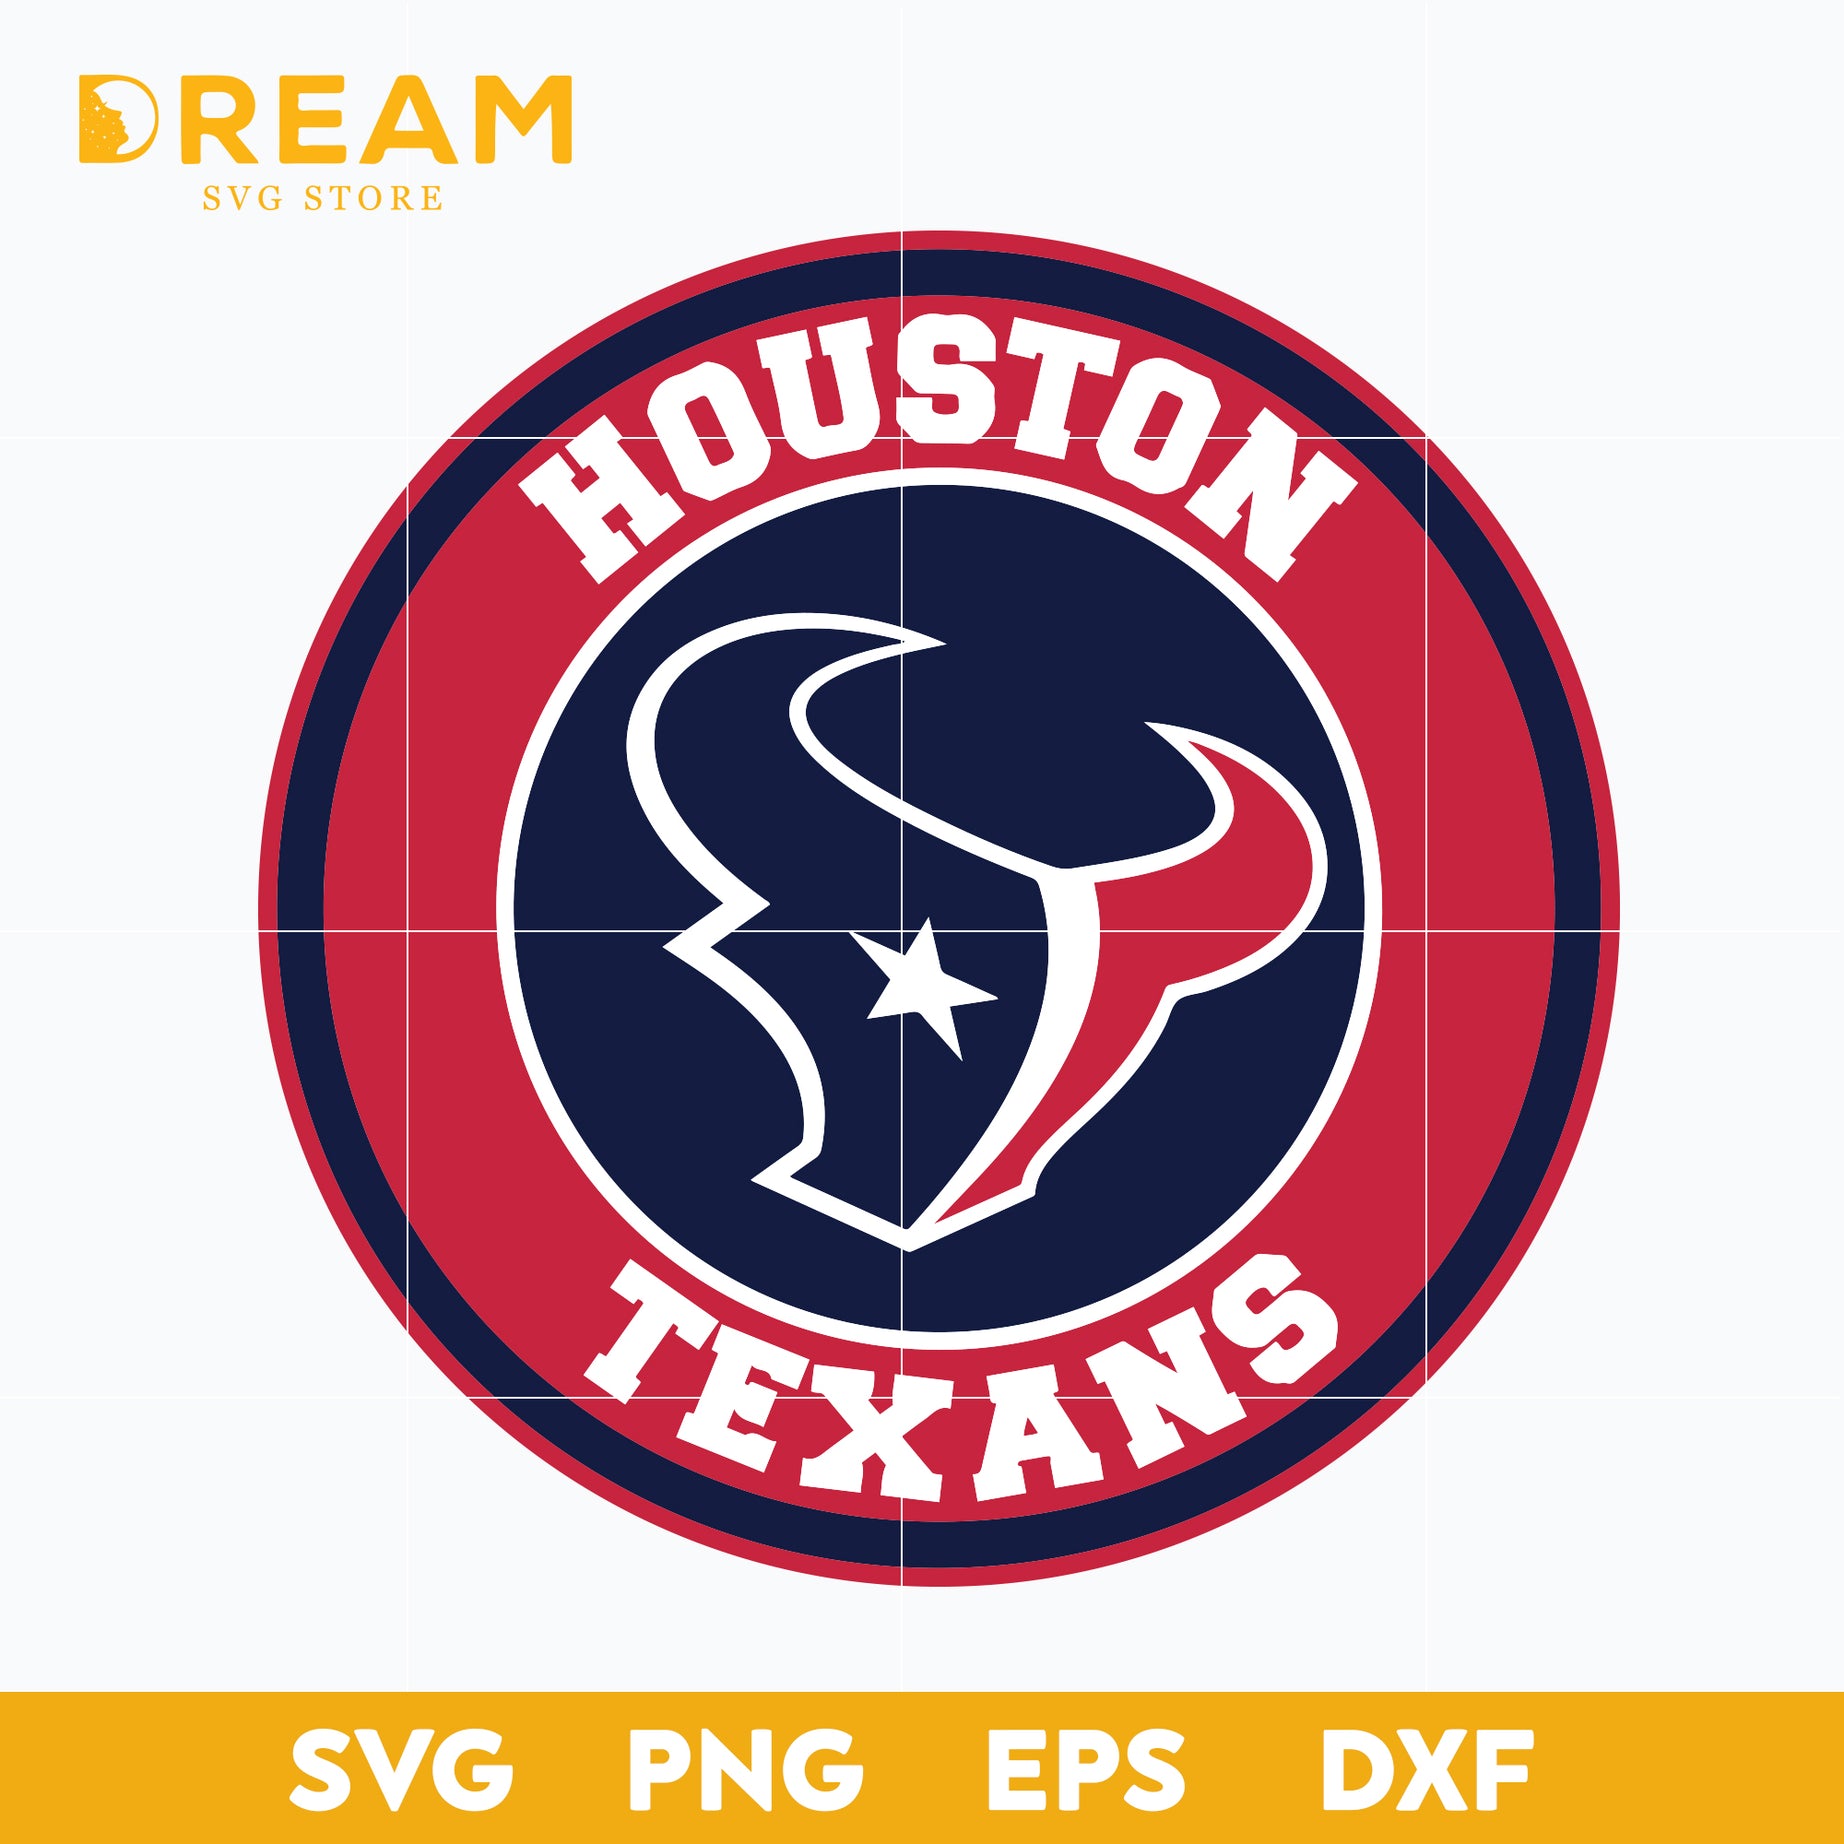 Houton texans svg, Texans svg, Nfl svg, png, dxf, eps digital file NFL10102020L